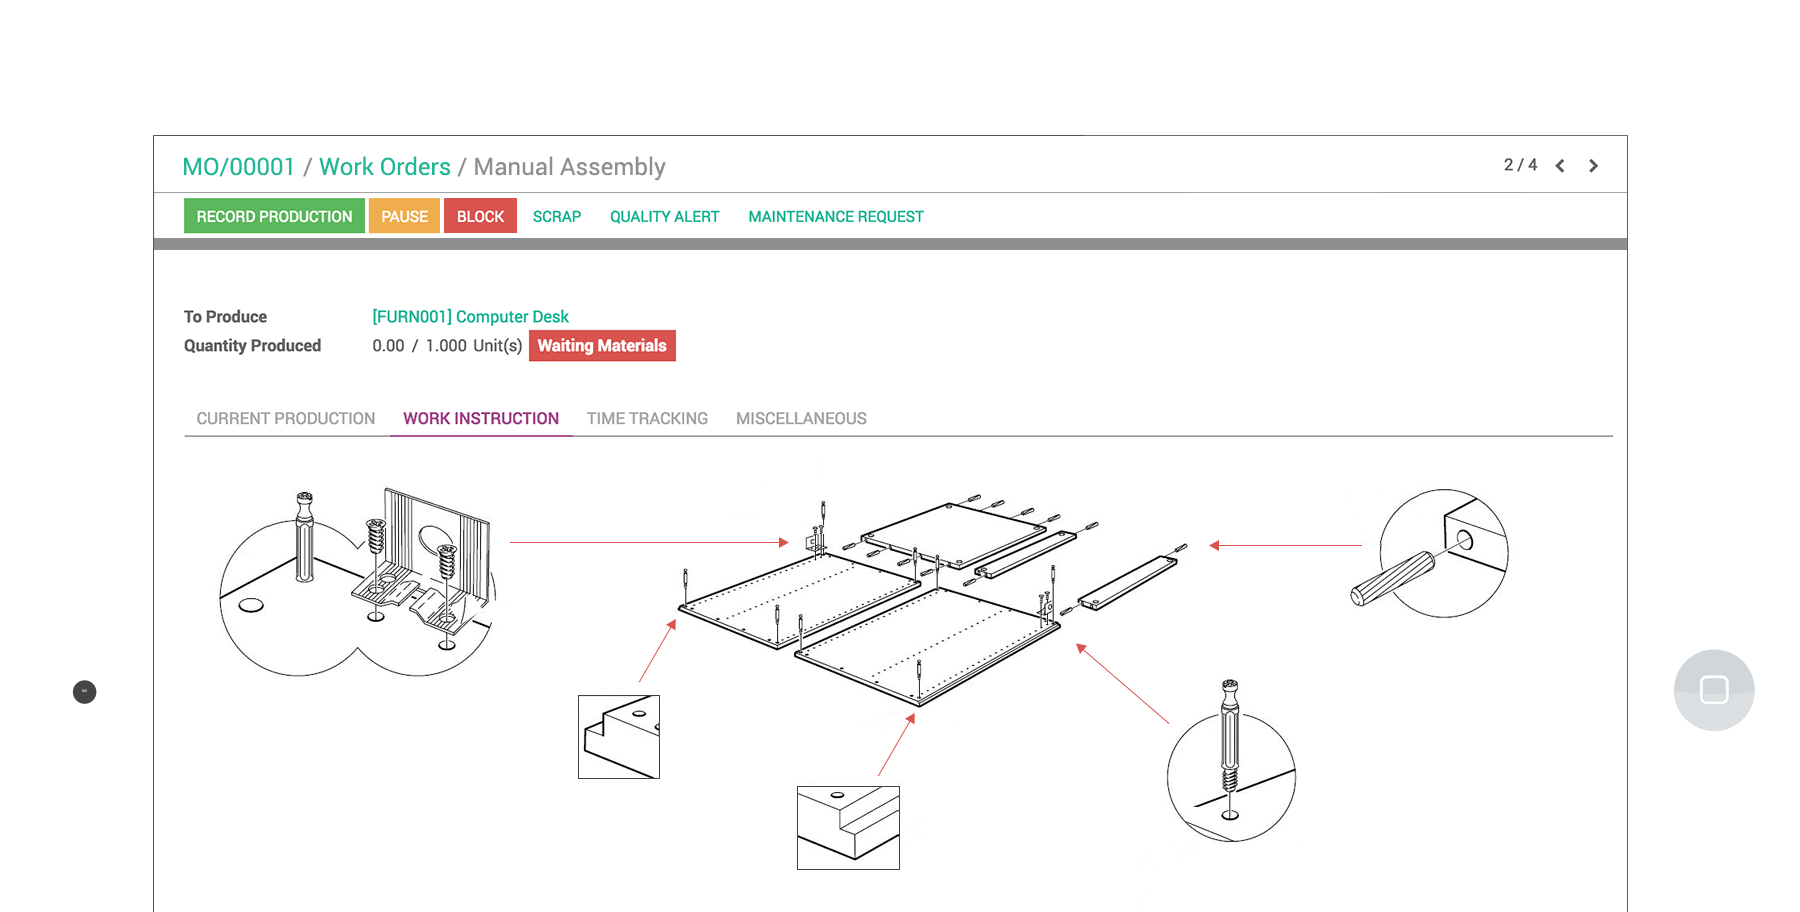 Giao diện máy tính bảng của Odoo Sản xuất hiển thị hướng dẫn lắp ráp cho một lệnh công đoạn 